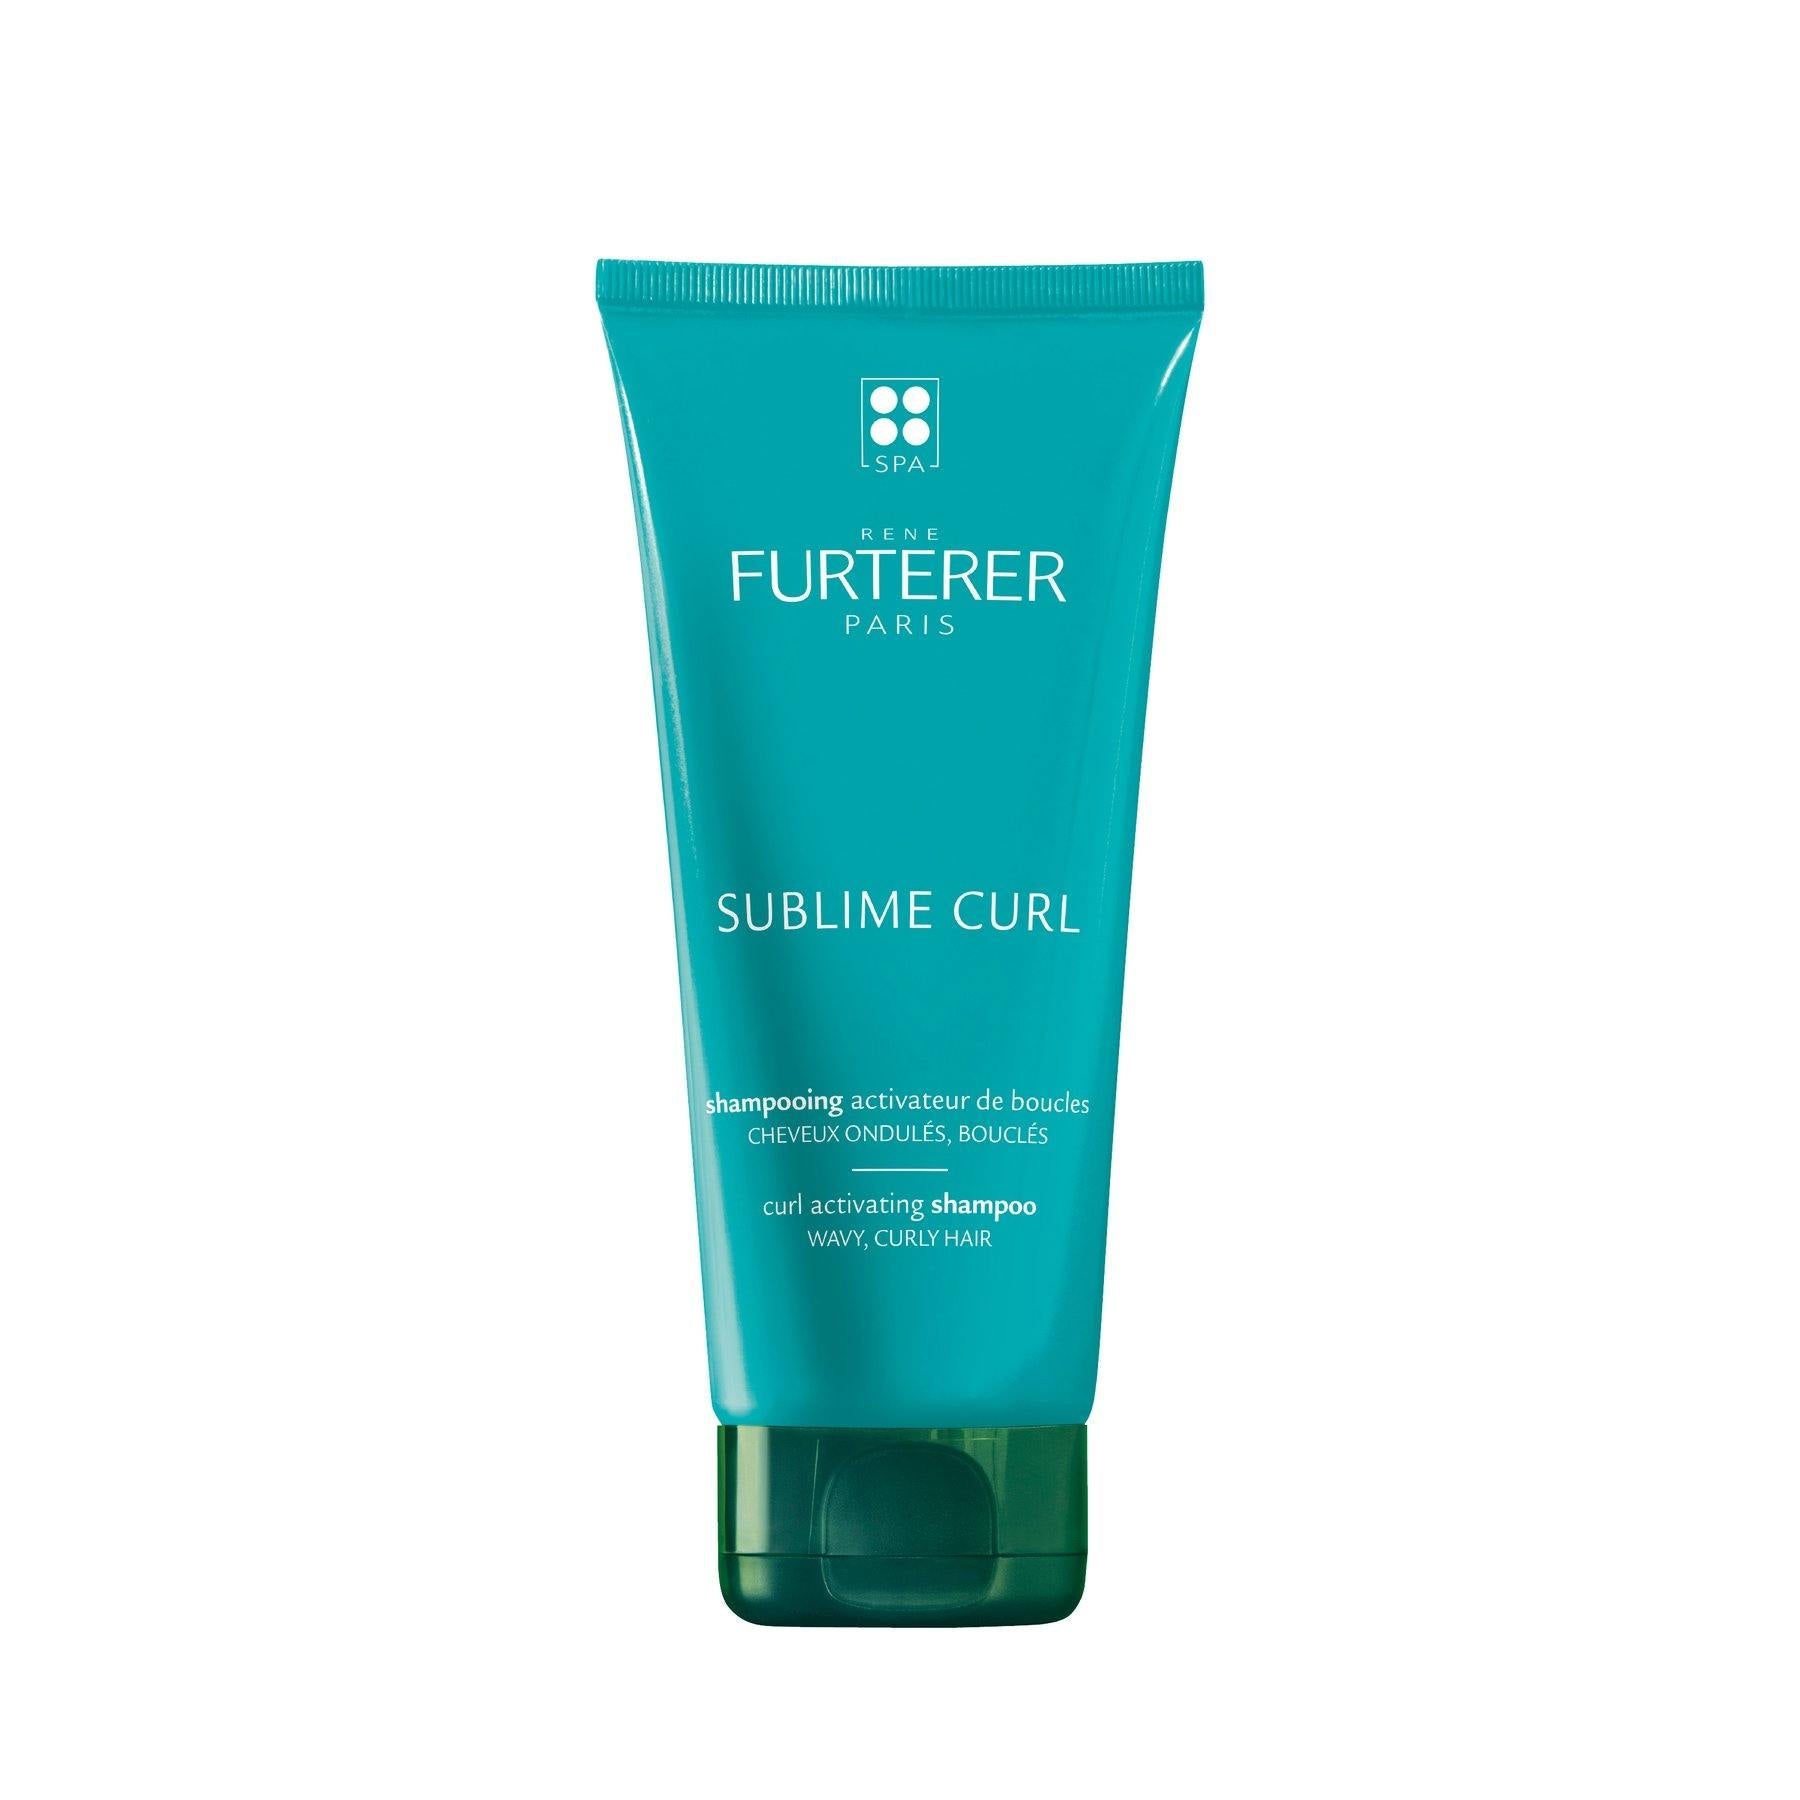 SUBLIME CURL shampoing activateur de boucles 200ml - René Furterer - 53 Karat